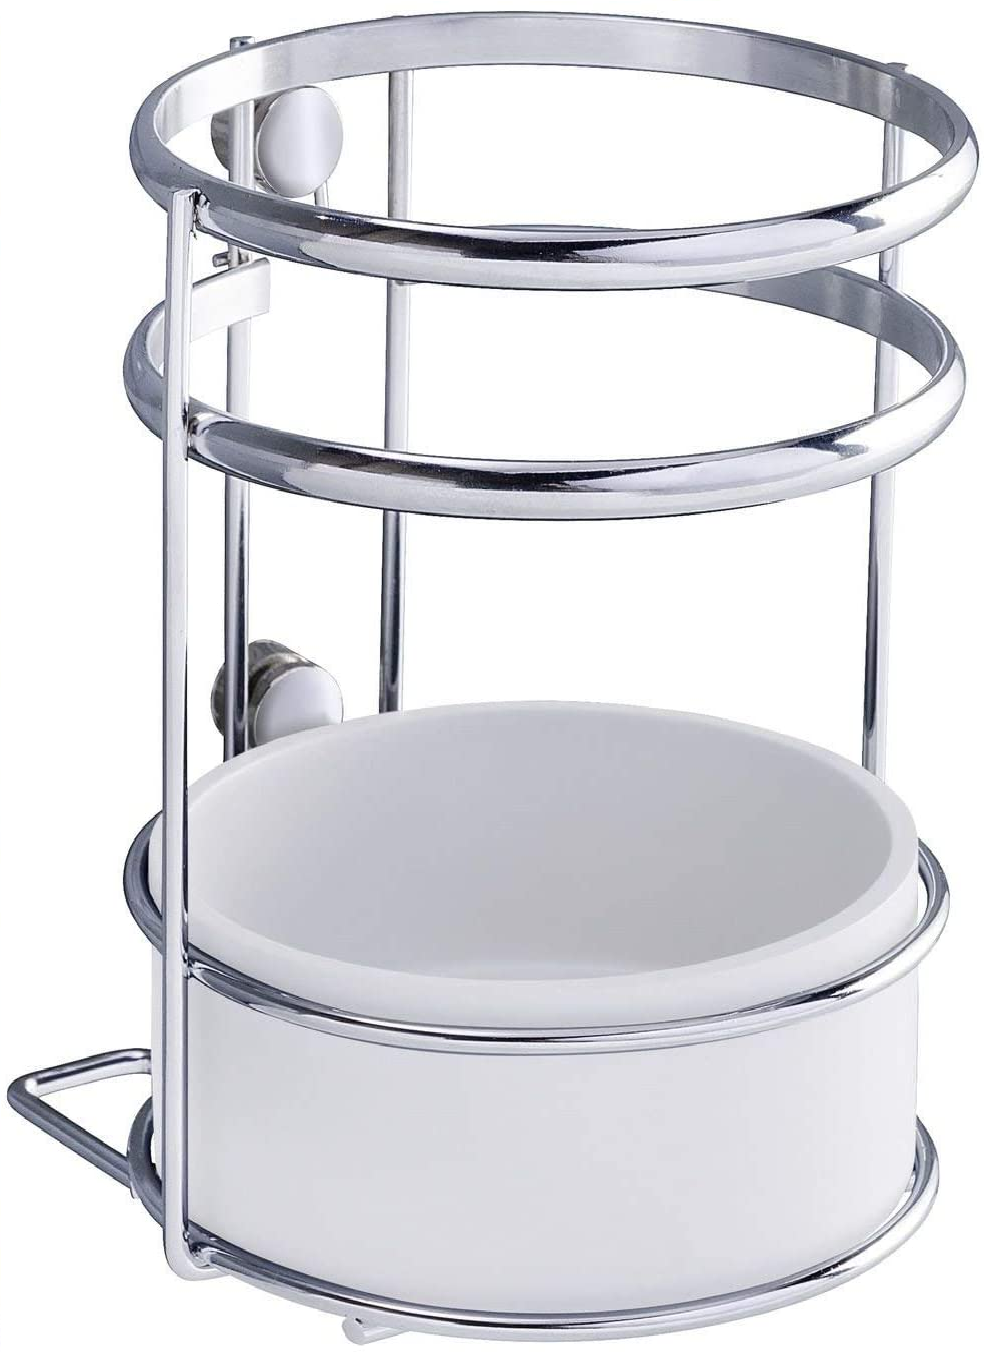 Utensilienhalter Style - Aufbewahrungskorb für die Küche, verchromtes Metall, 13 x 15 x 13 cm, Silber glänzend